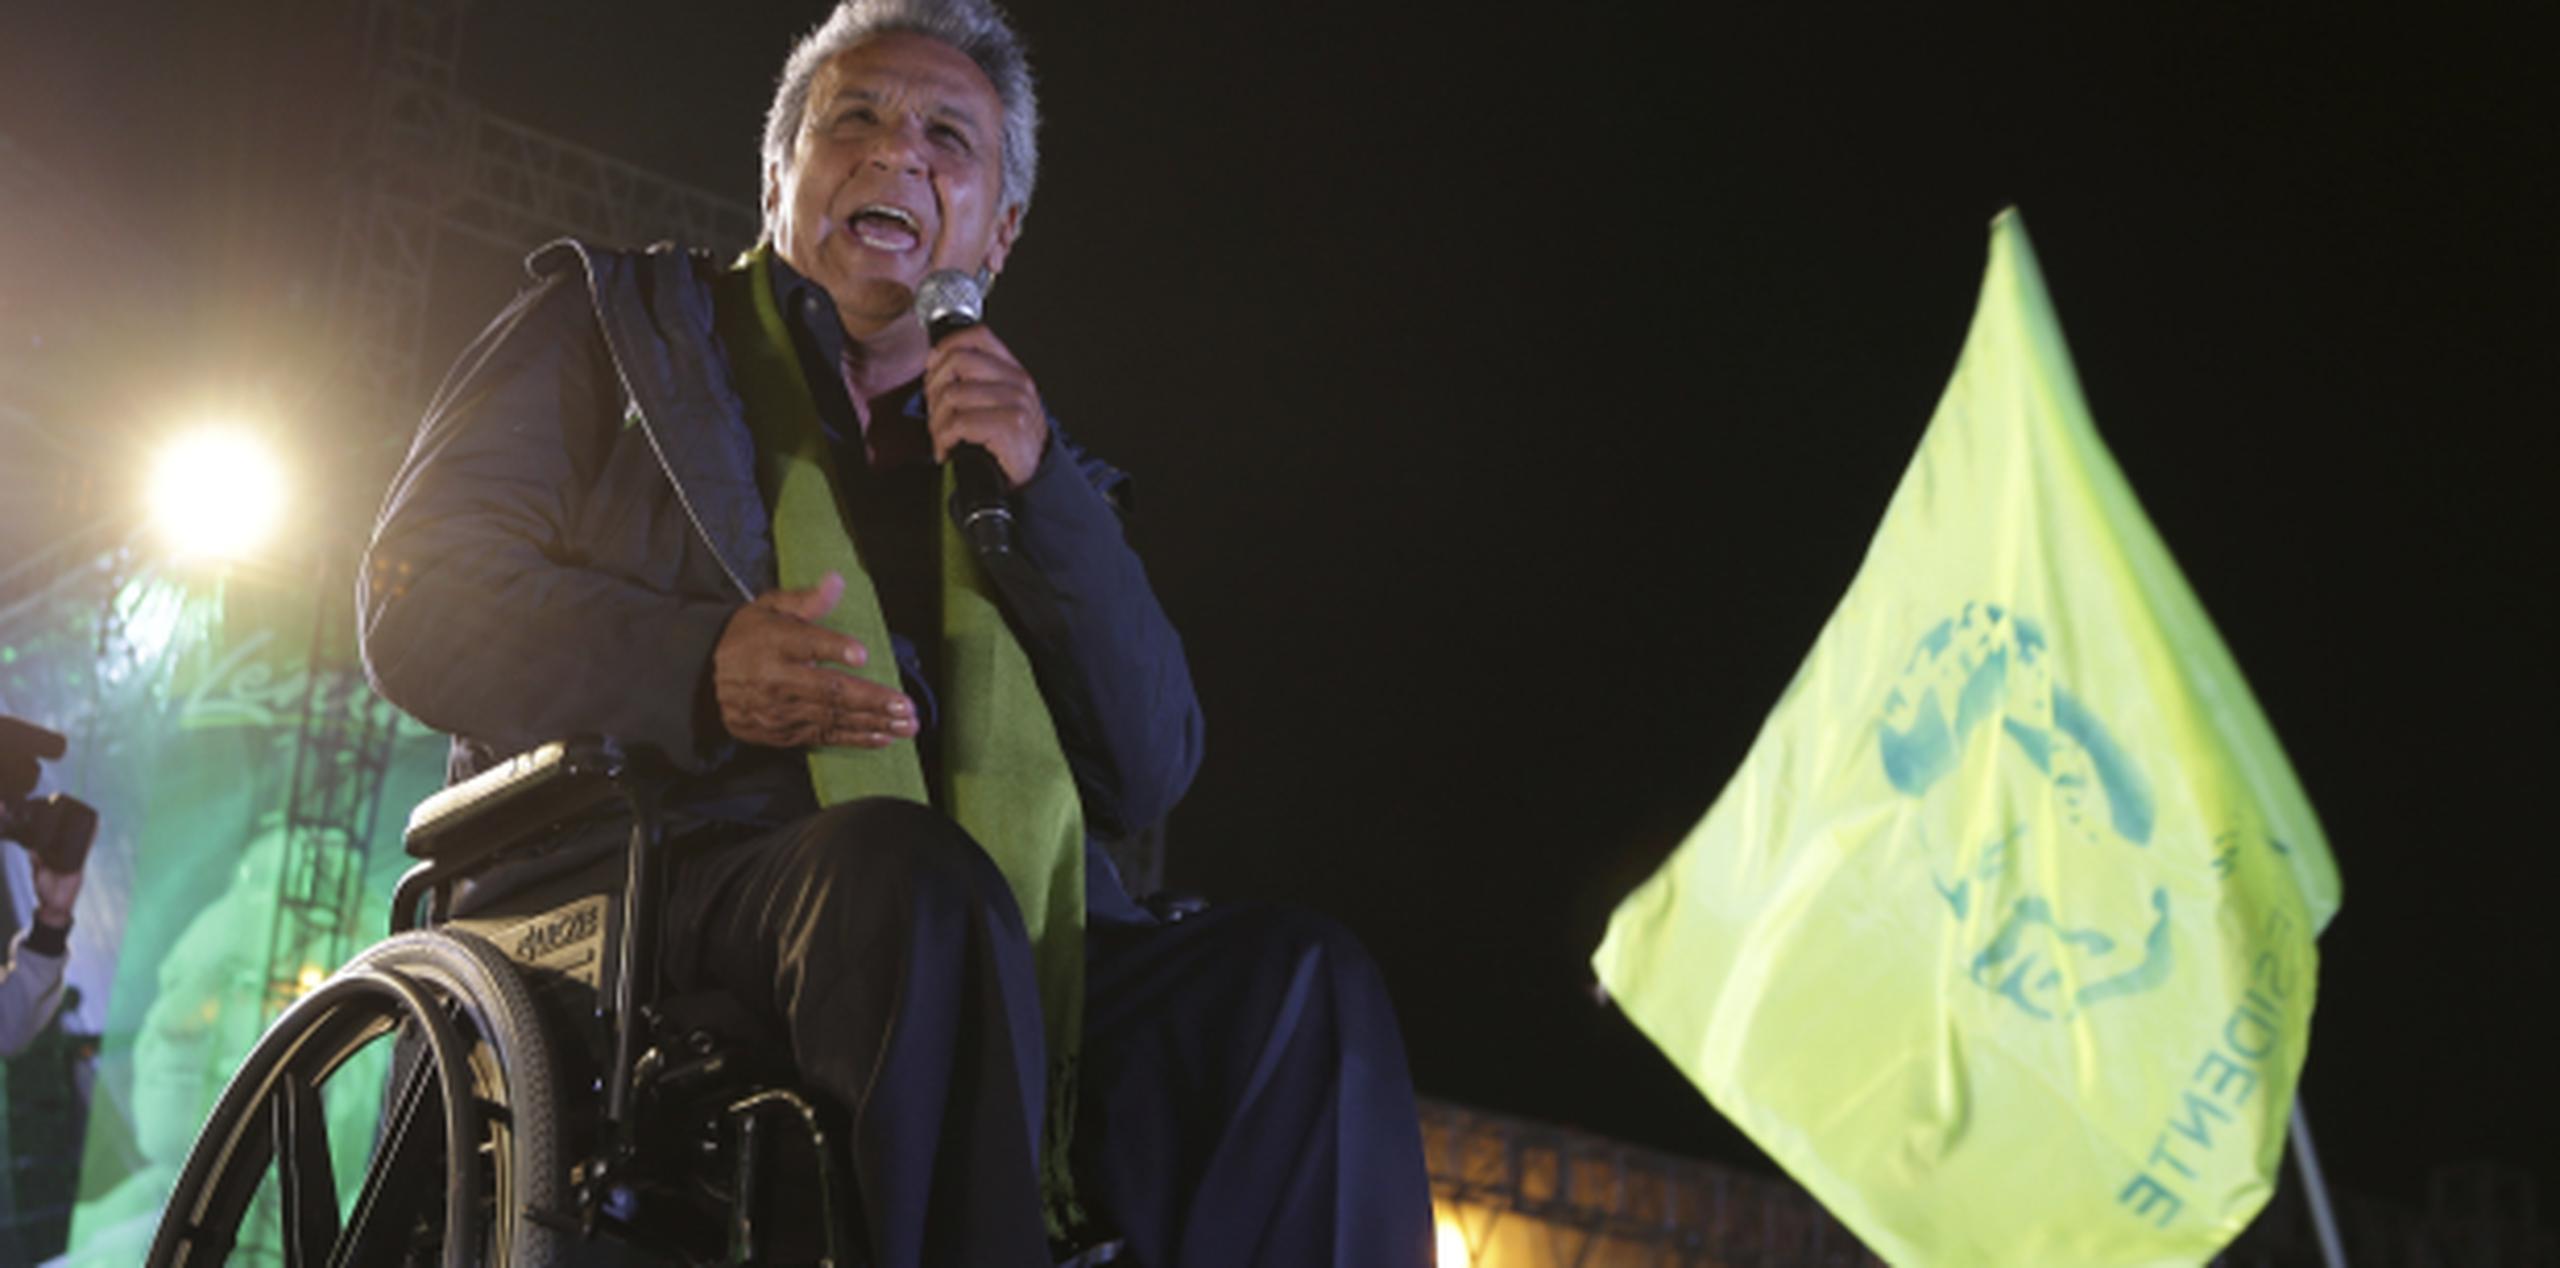 
Moreno es uno de los dos aspirantes a sustituir a Rafael Correa, quien lleva 10 años al timón de Ecuador. (AP)
